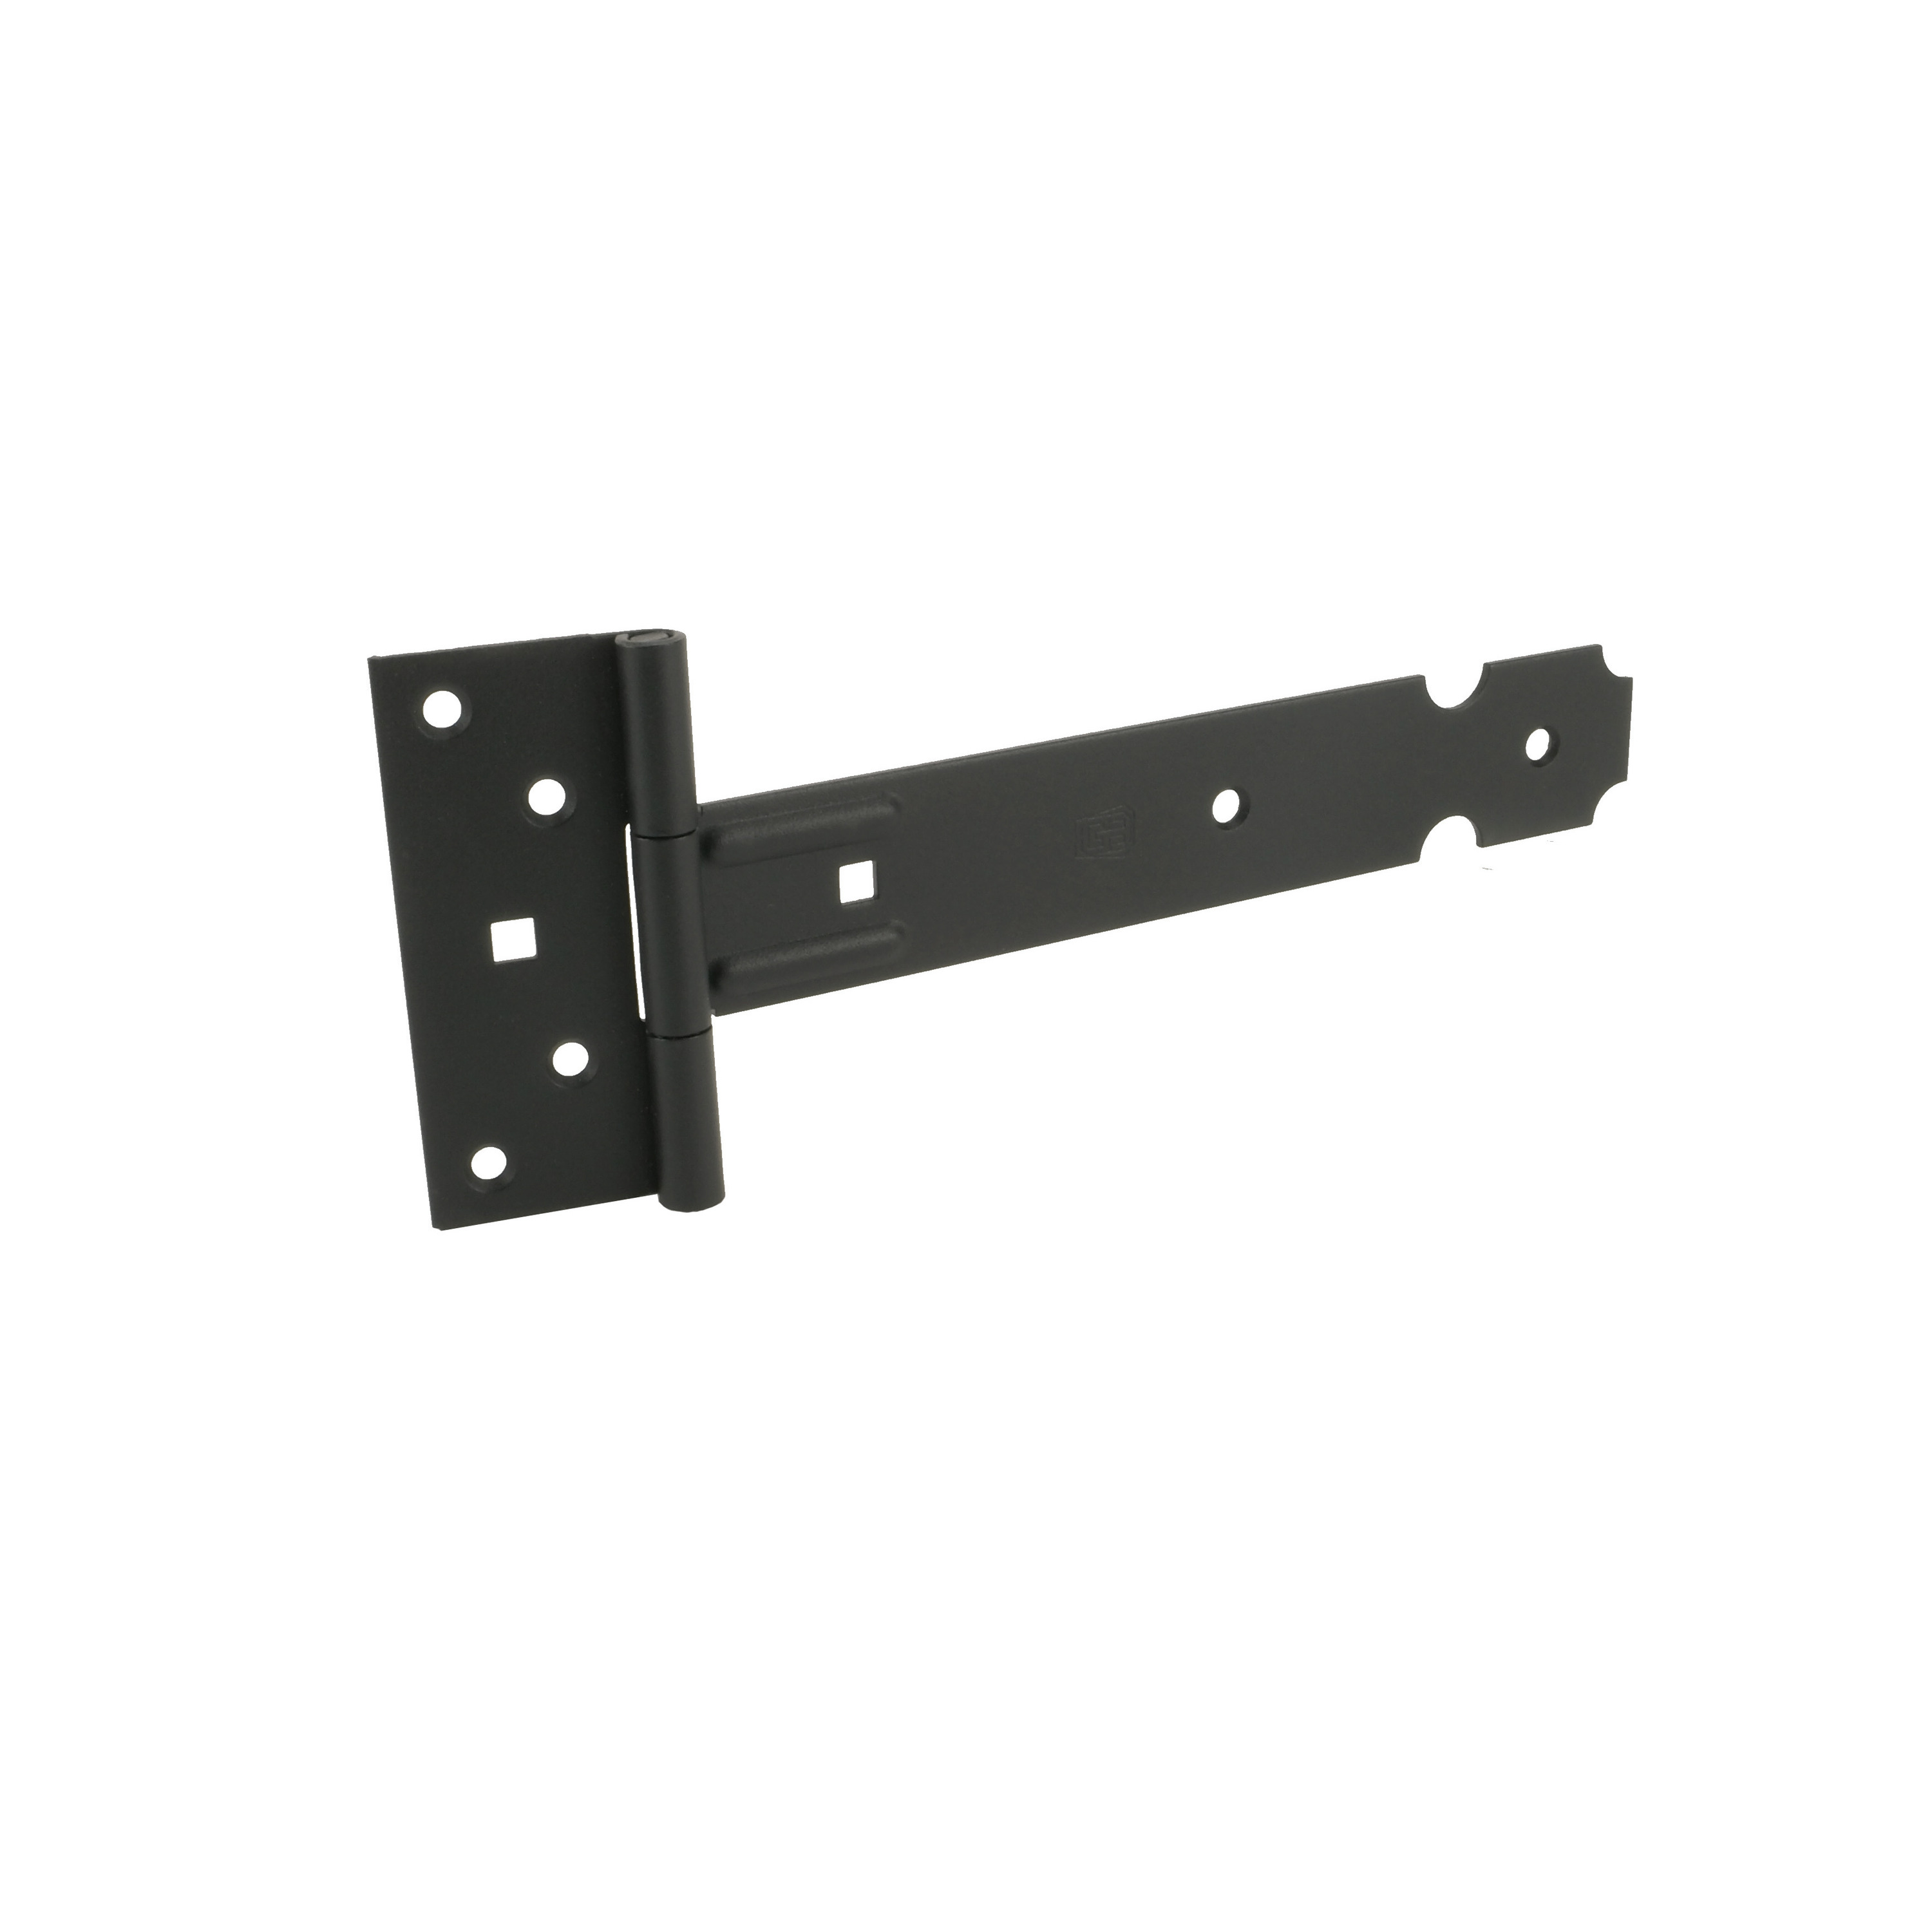 1x Poortscharnieren-hekwerk -kruisheng scharnieren staal zwart epoxy 40 x 3.5 cm